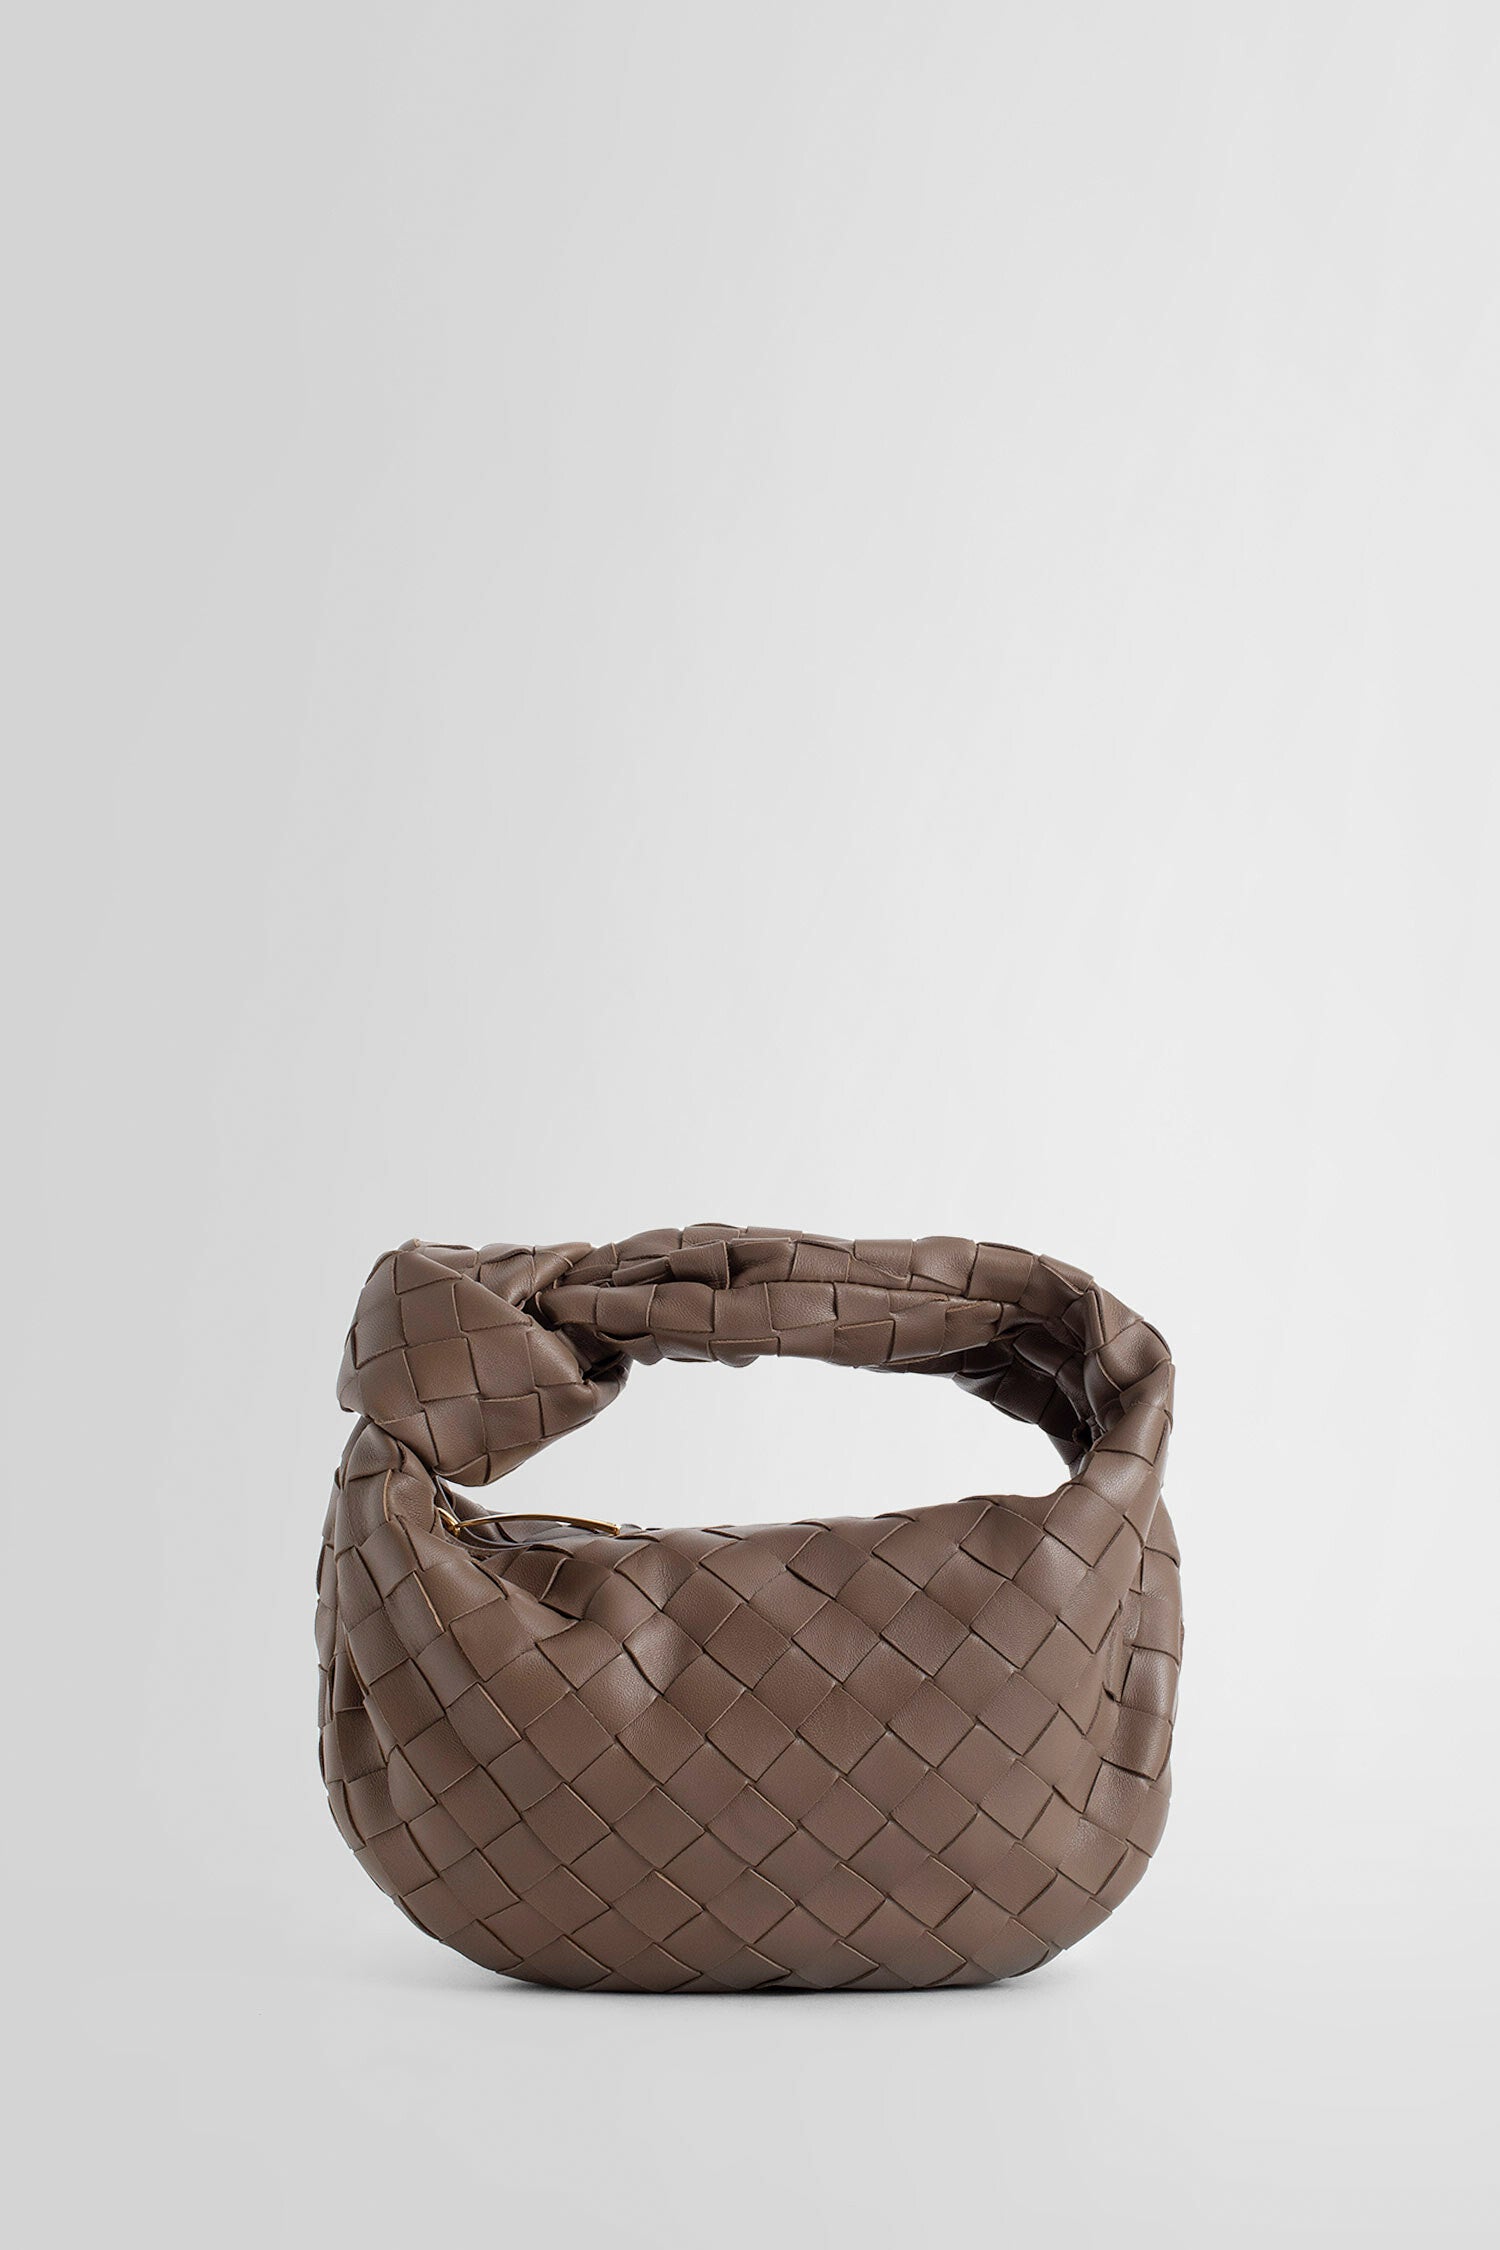 BOTTEGA VENETA Knot Padded Woven Lambskin Clutch Bag for Women